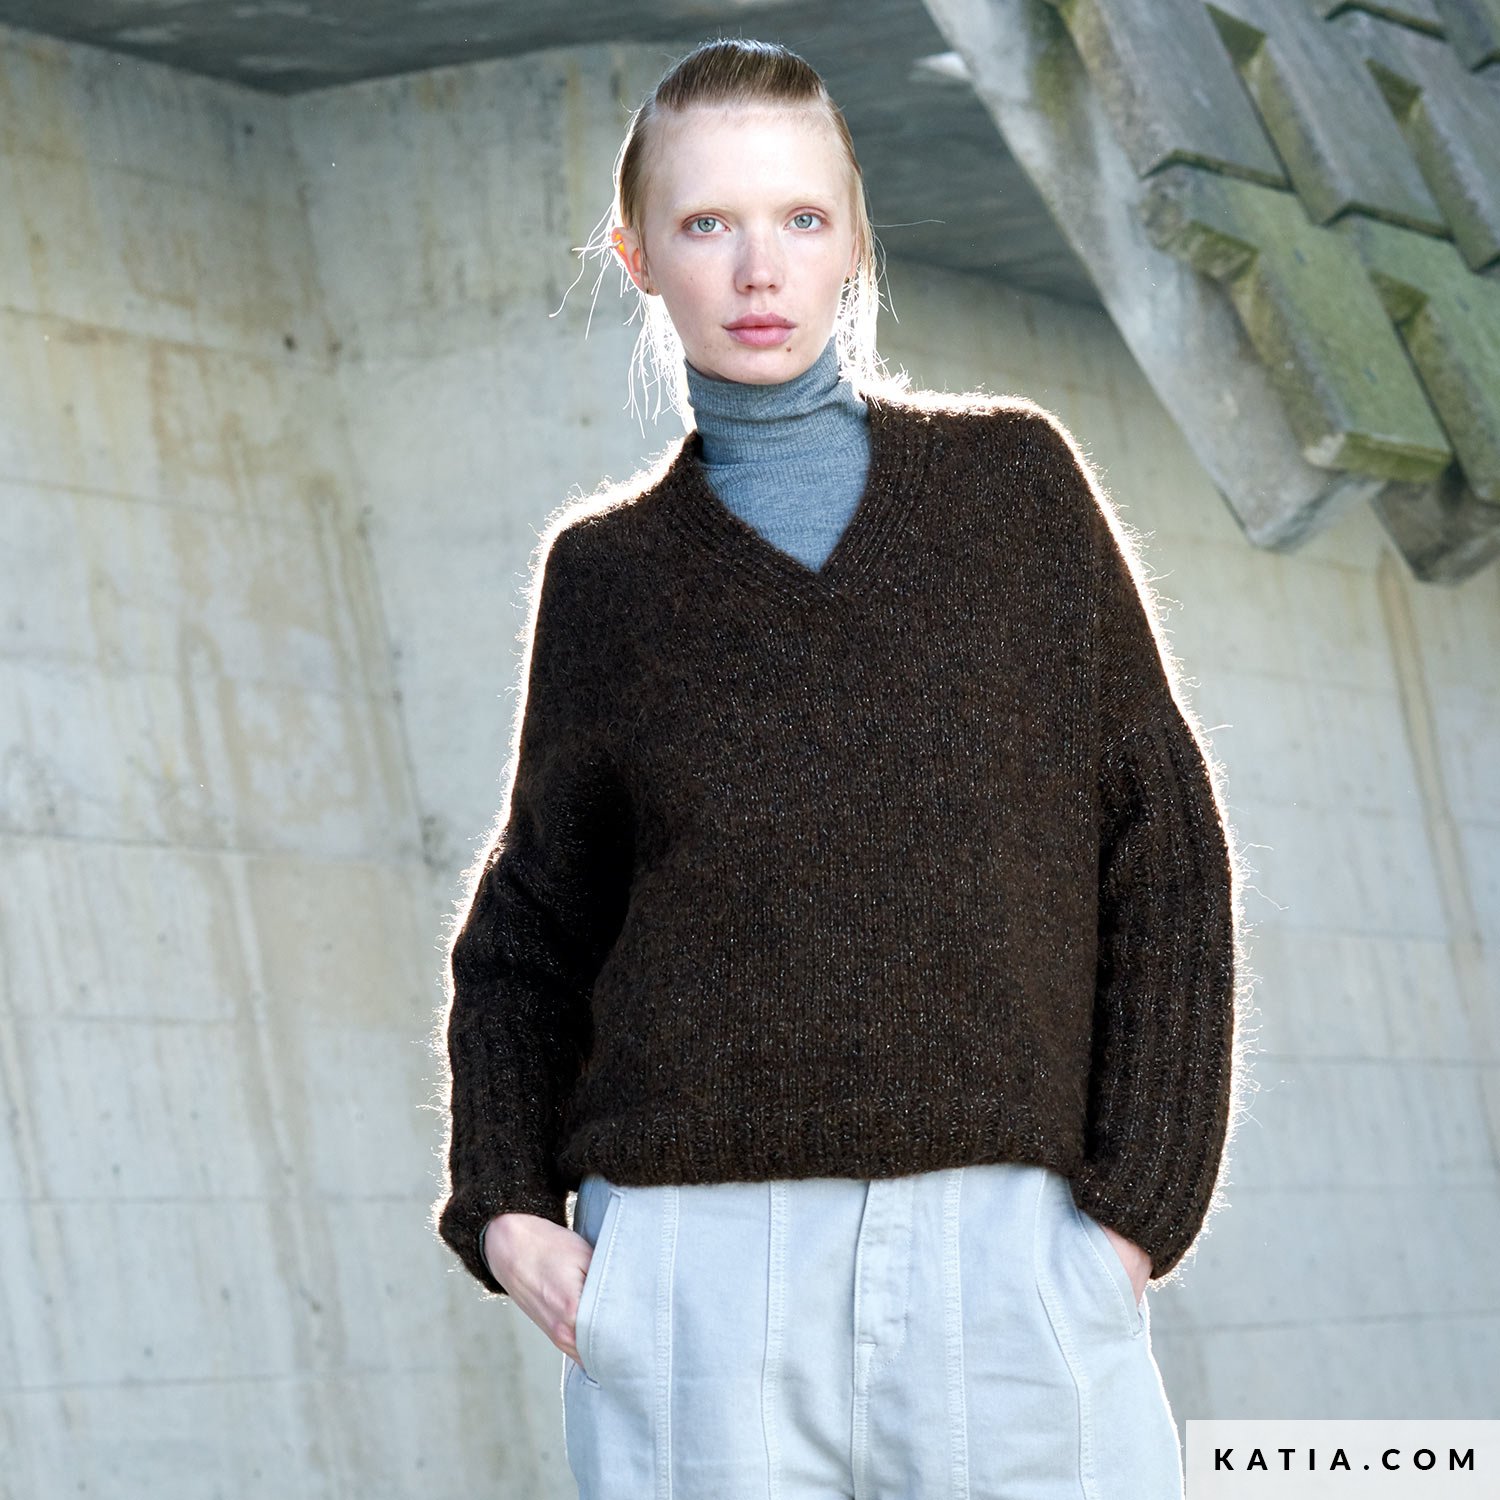 Pull en tricot pour femme - Pull chaud - Mode - Col roulé - Oversize -  Fermeture éclair - Pull en tricot